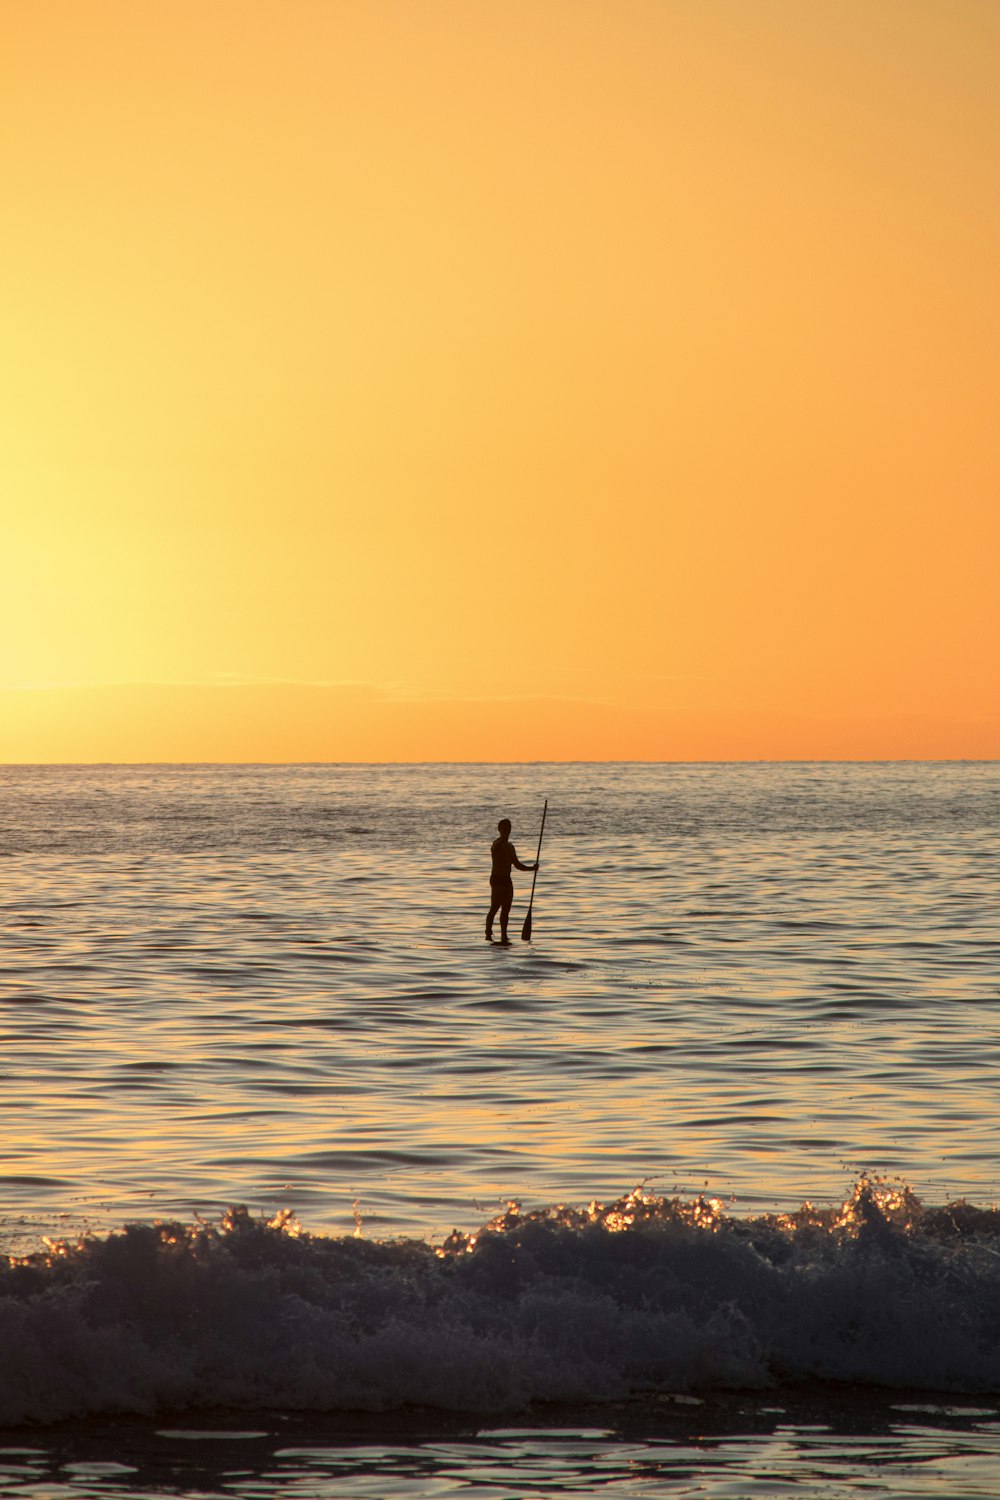 Eine Person auf einem Surfbrett im Meer bei Sonnenuntergang